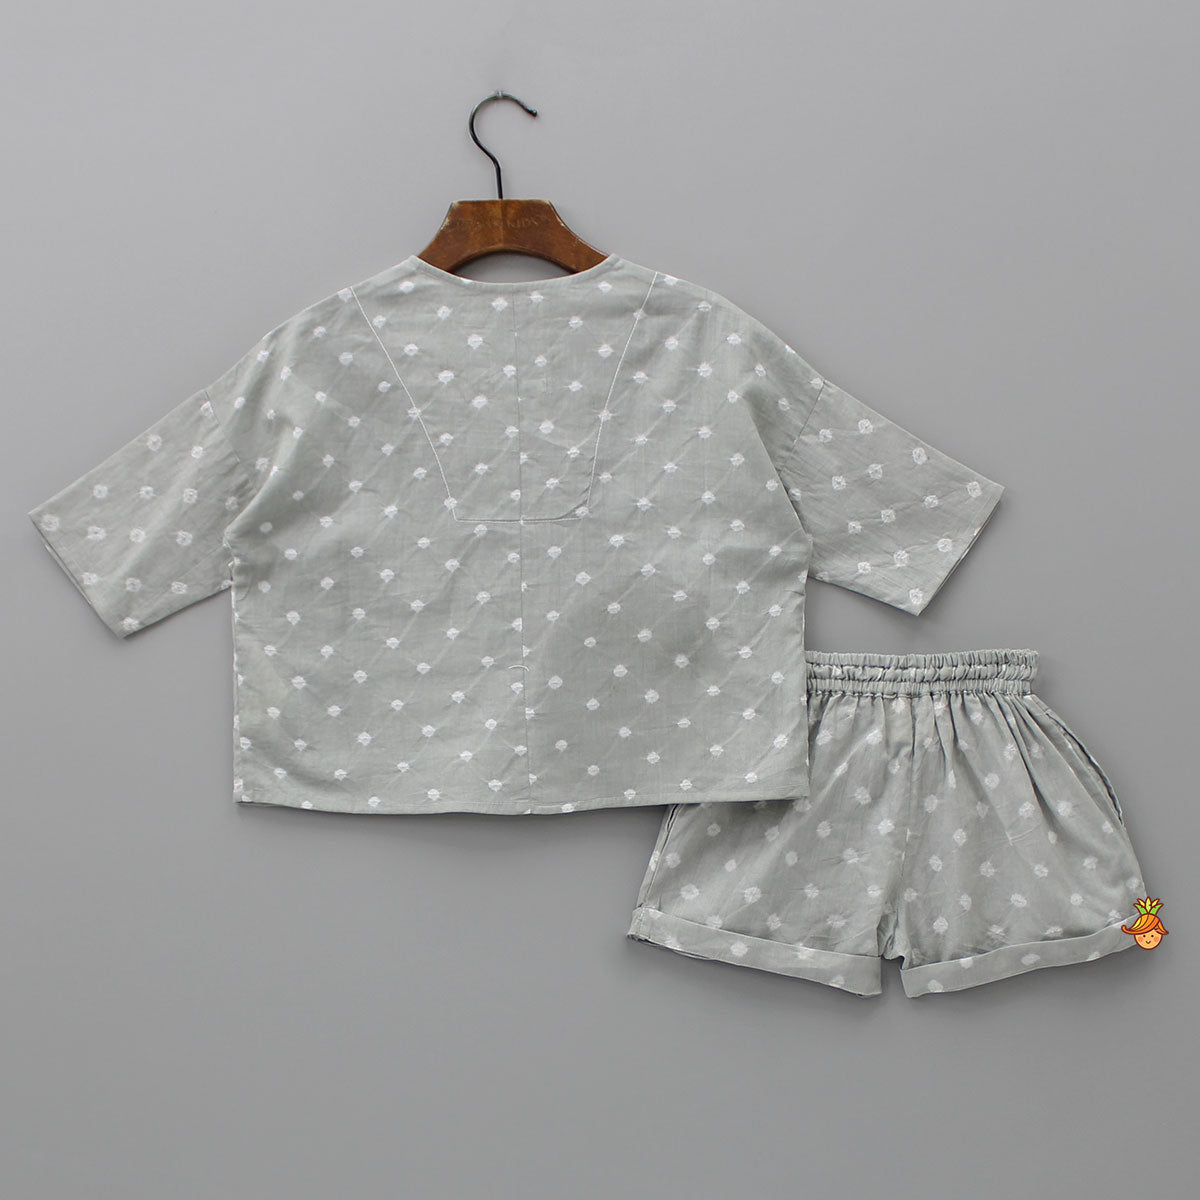 Printed Grey Bandhani Top And Shorts